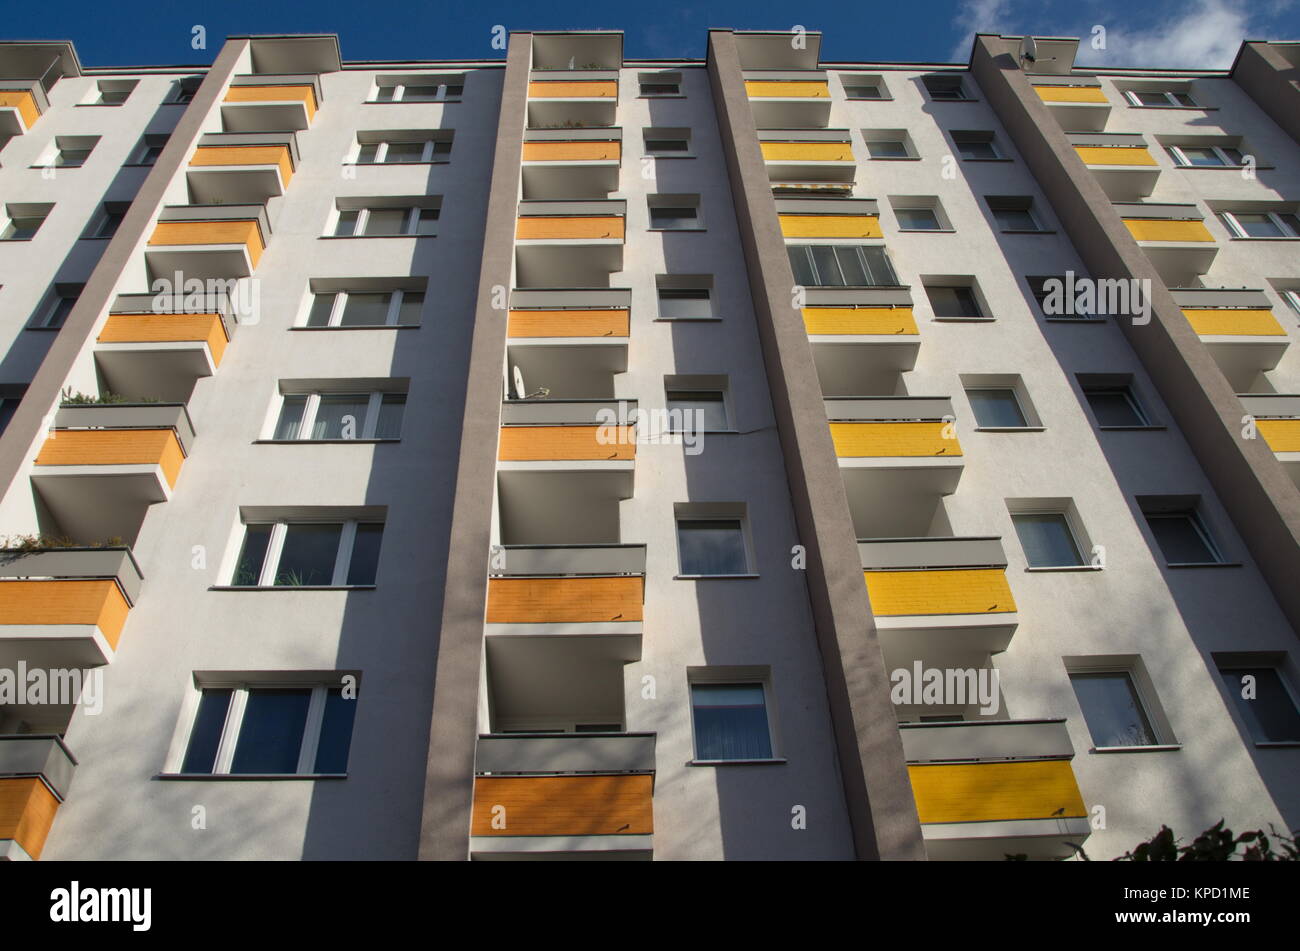 balconies in gropiusstadt Stock Photo